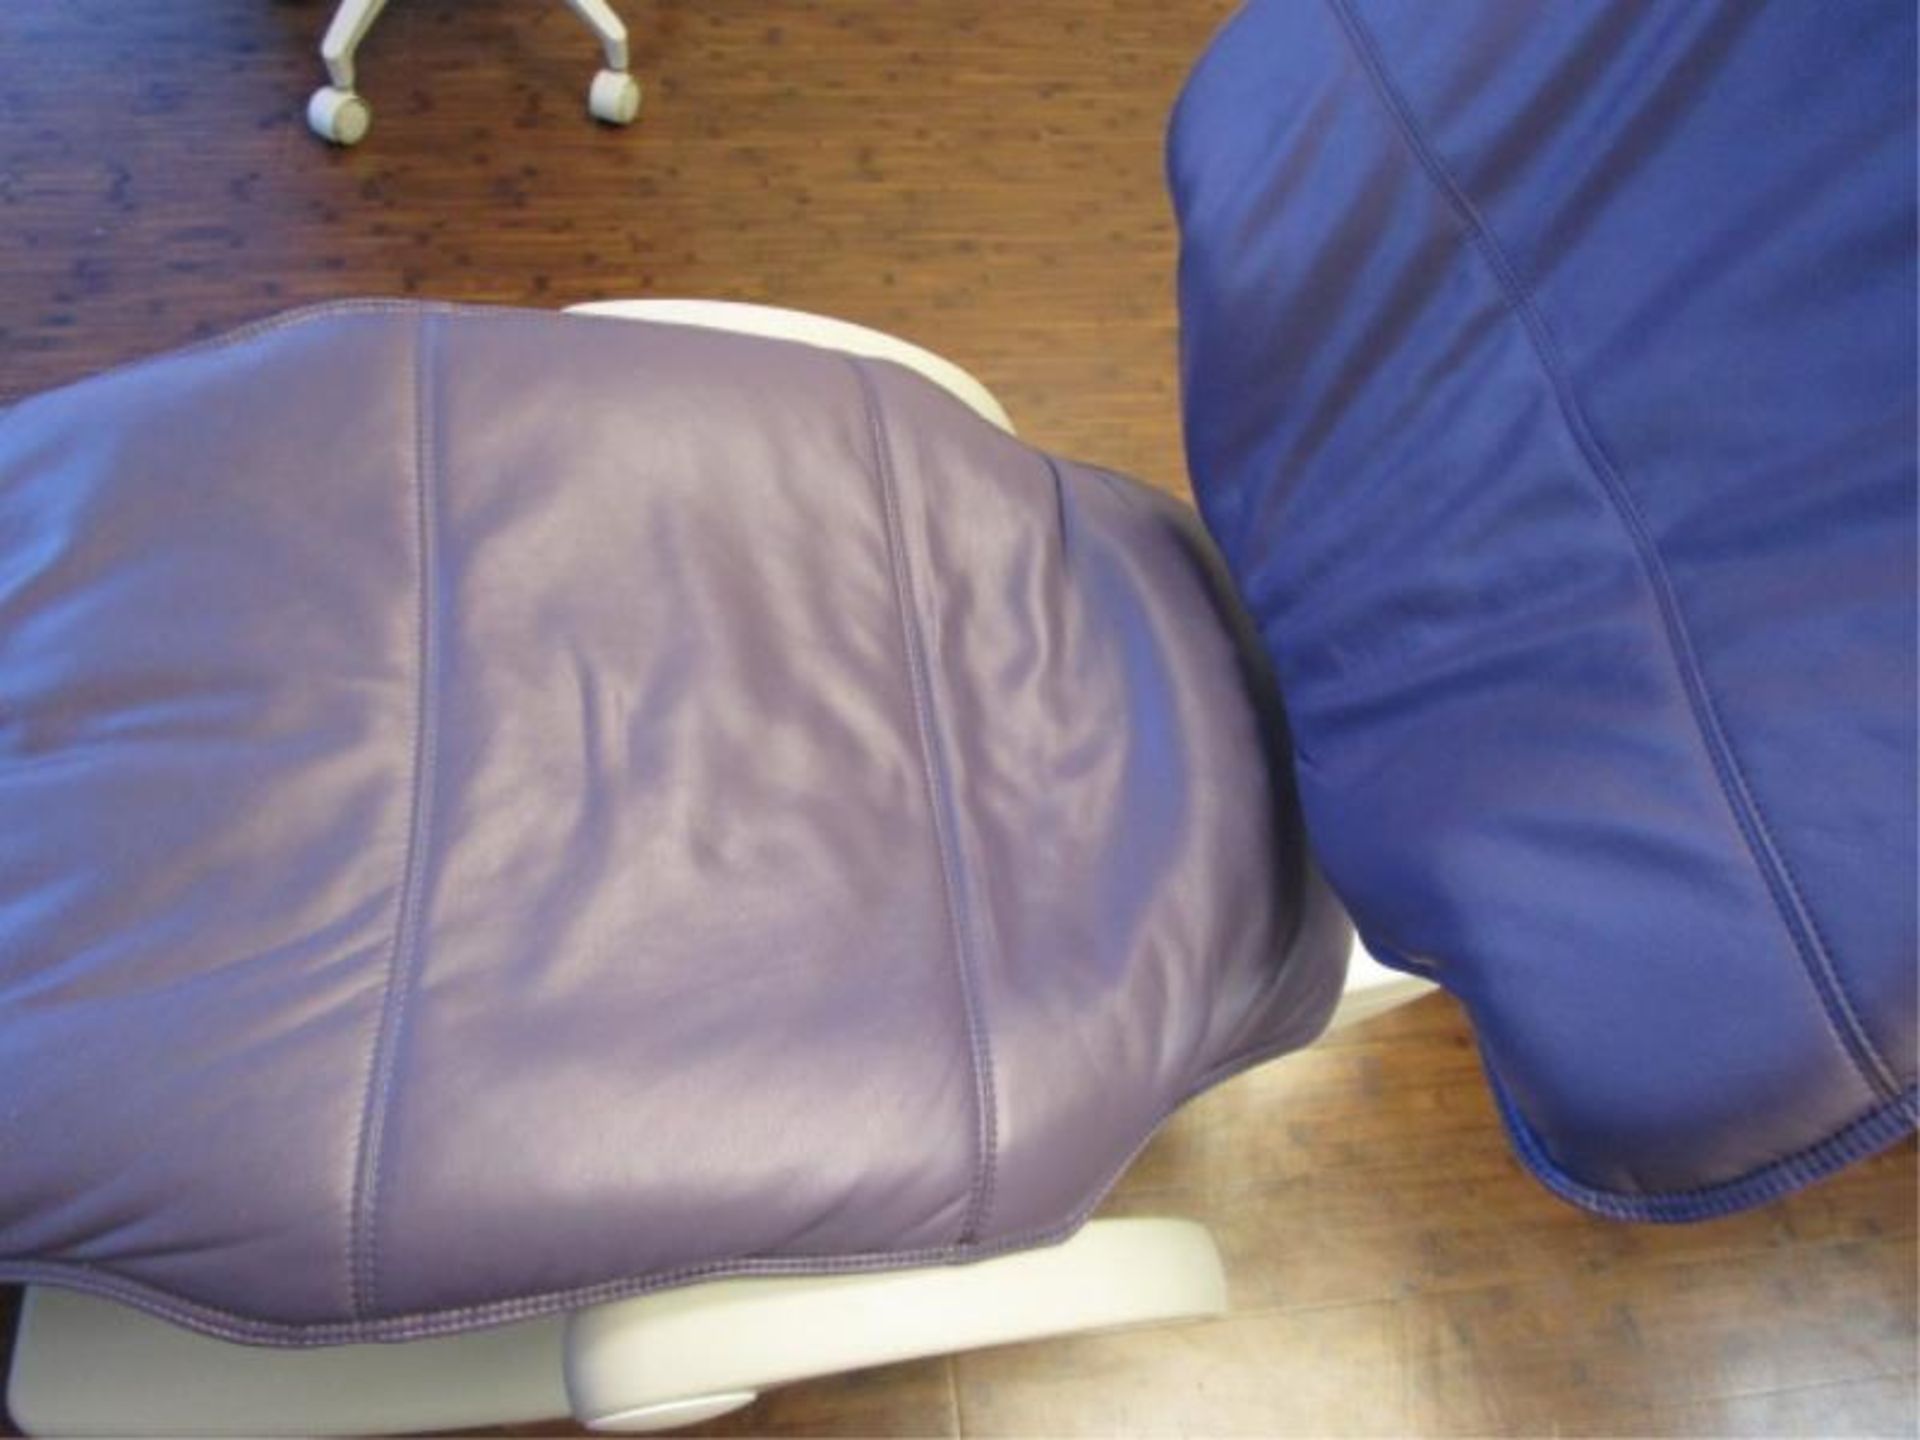 Adec Patient Exam Chair Model:511, S/N:13C77538 - Image 4 of 8